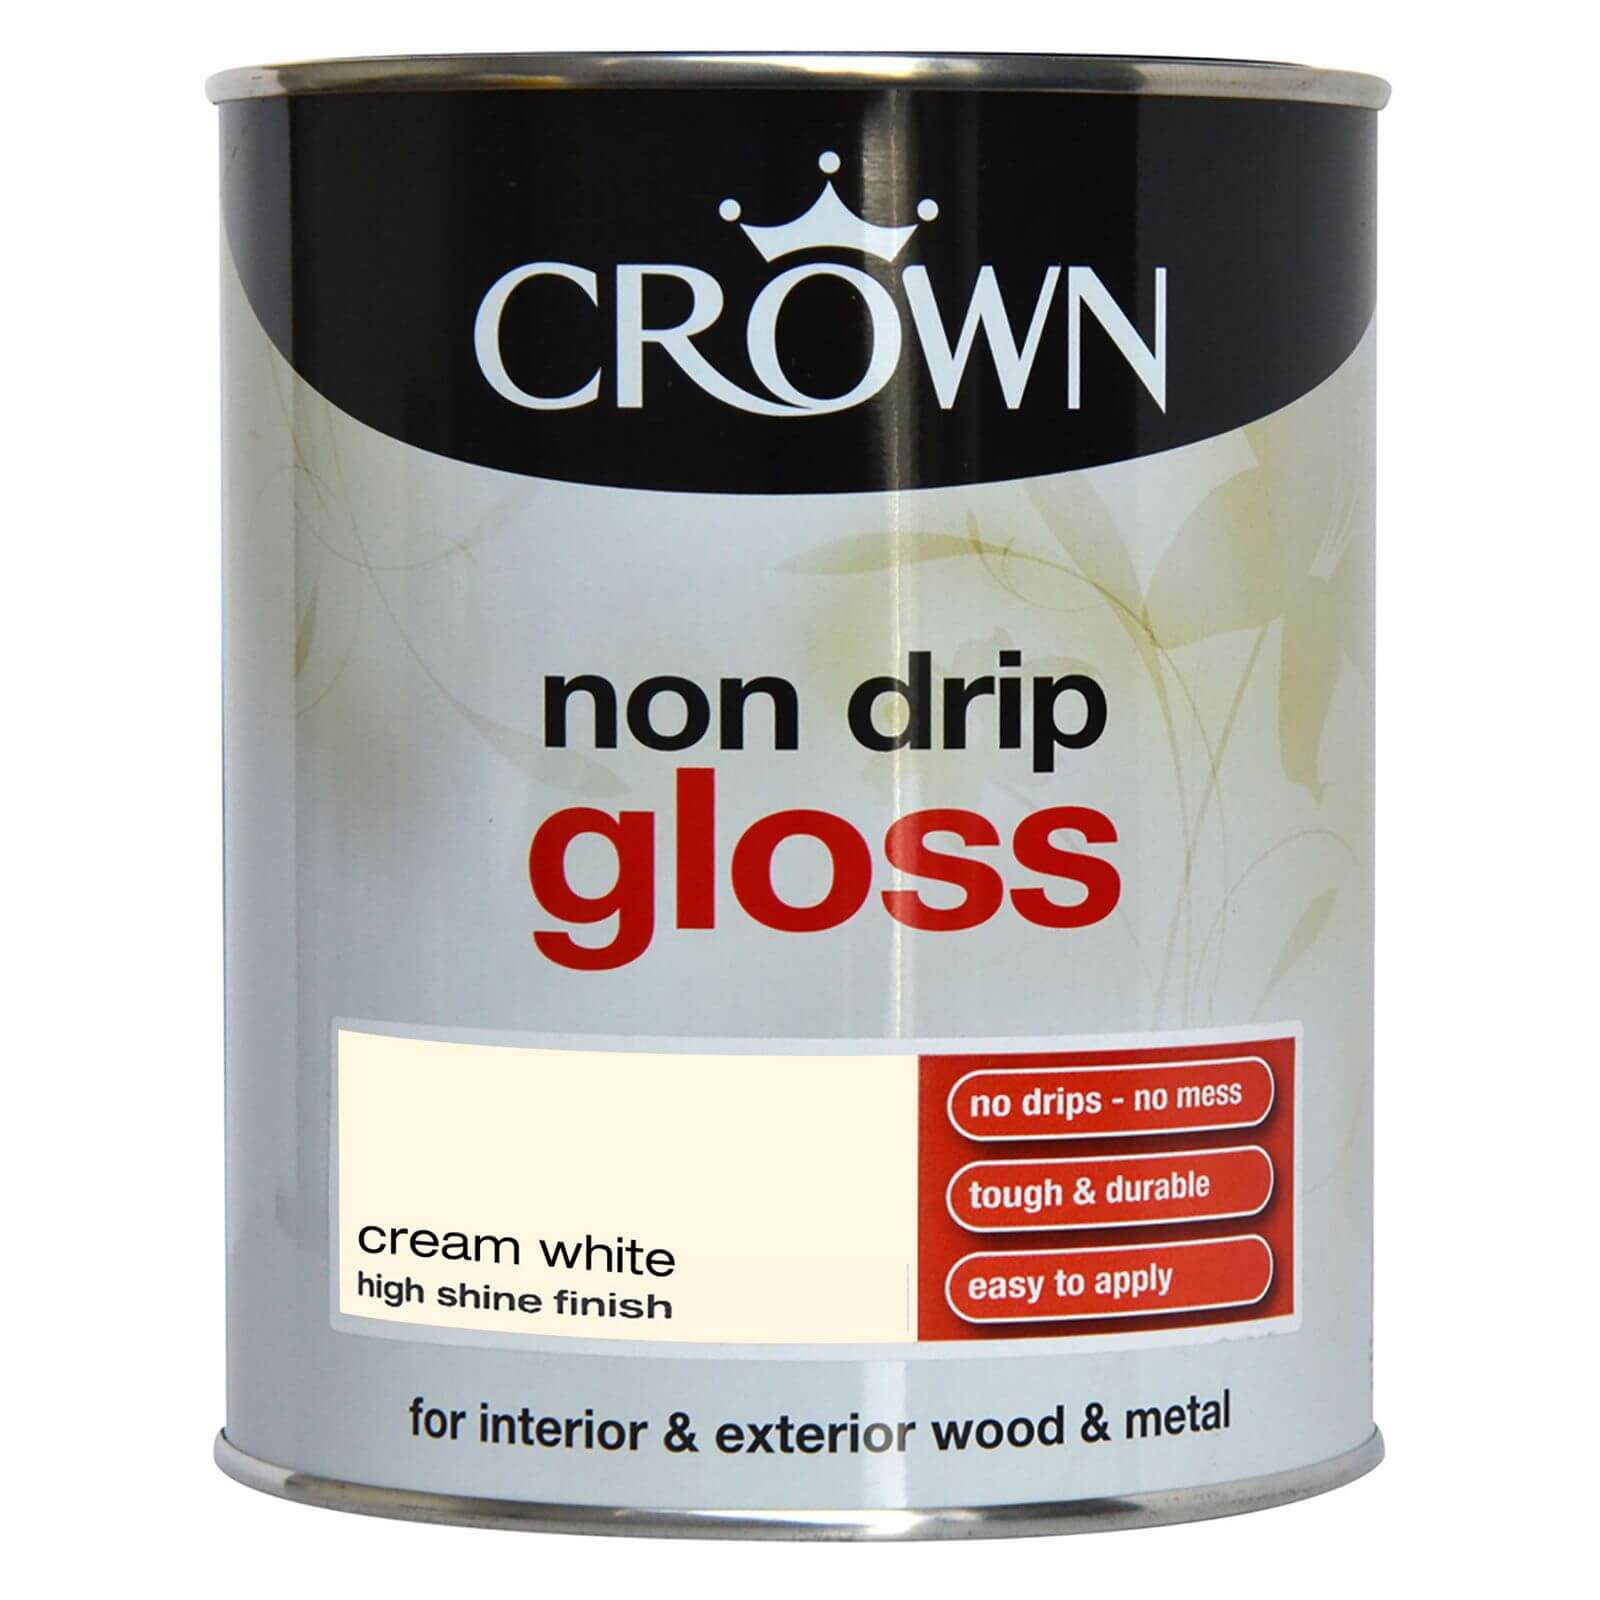 Crown Non Drip Gloss Paint Cream White - 750ml